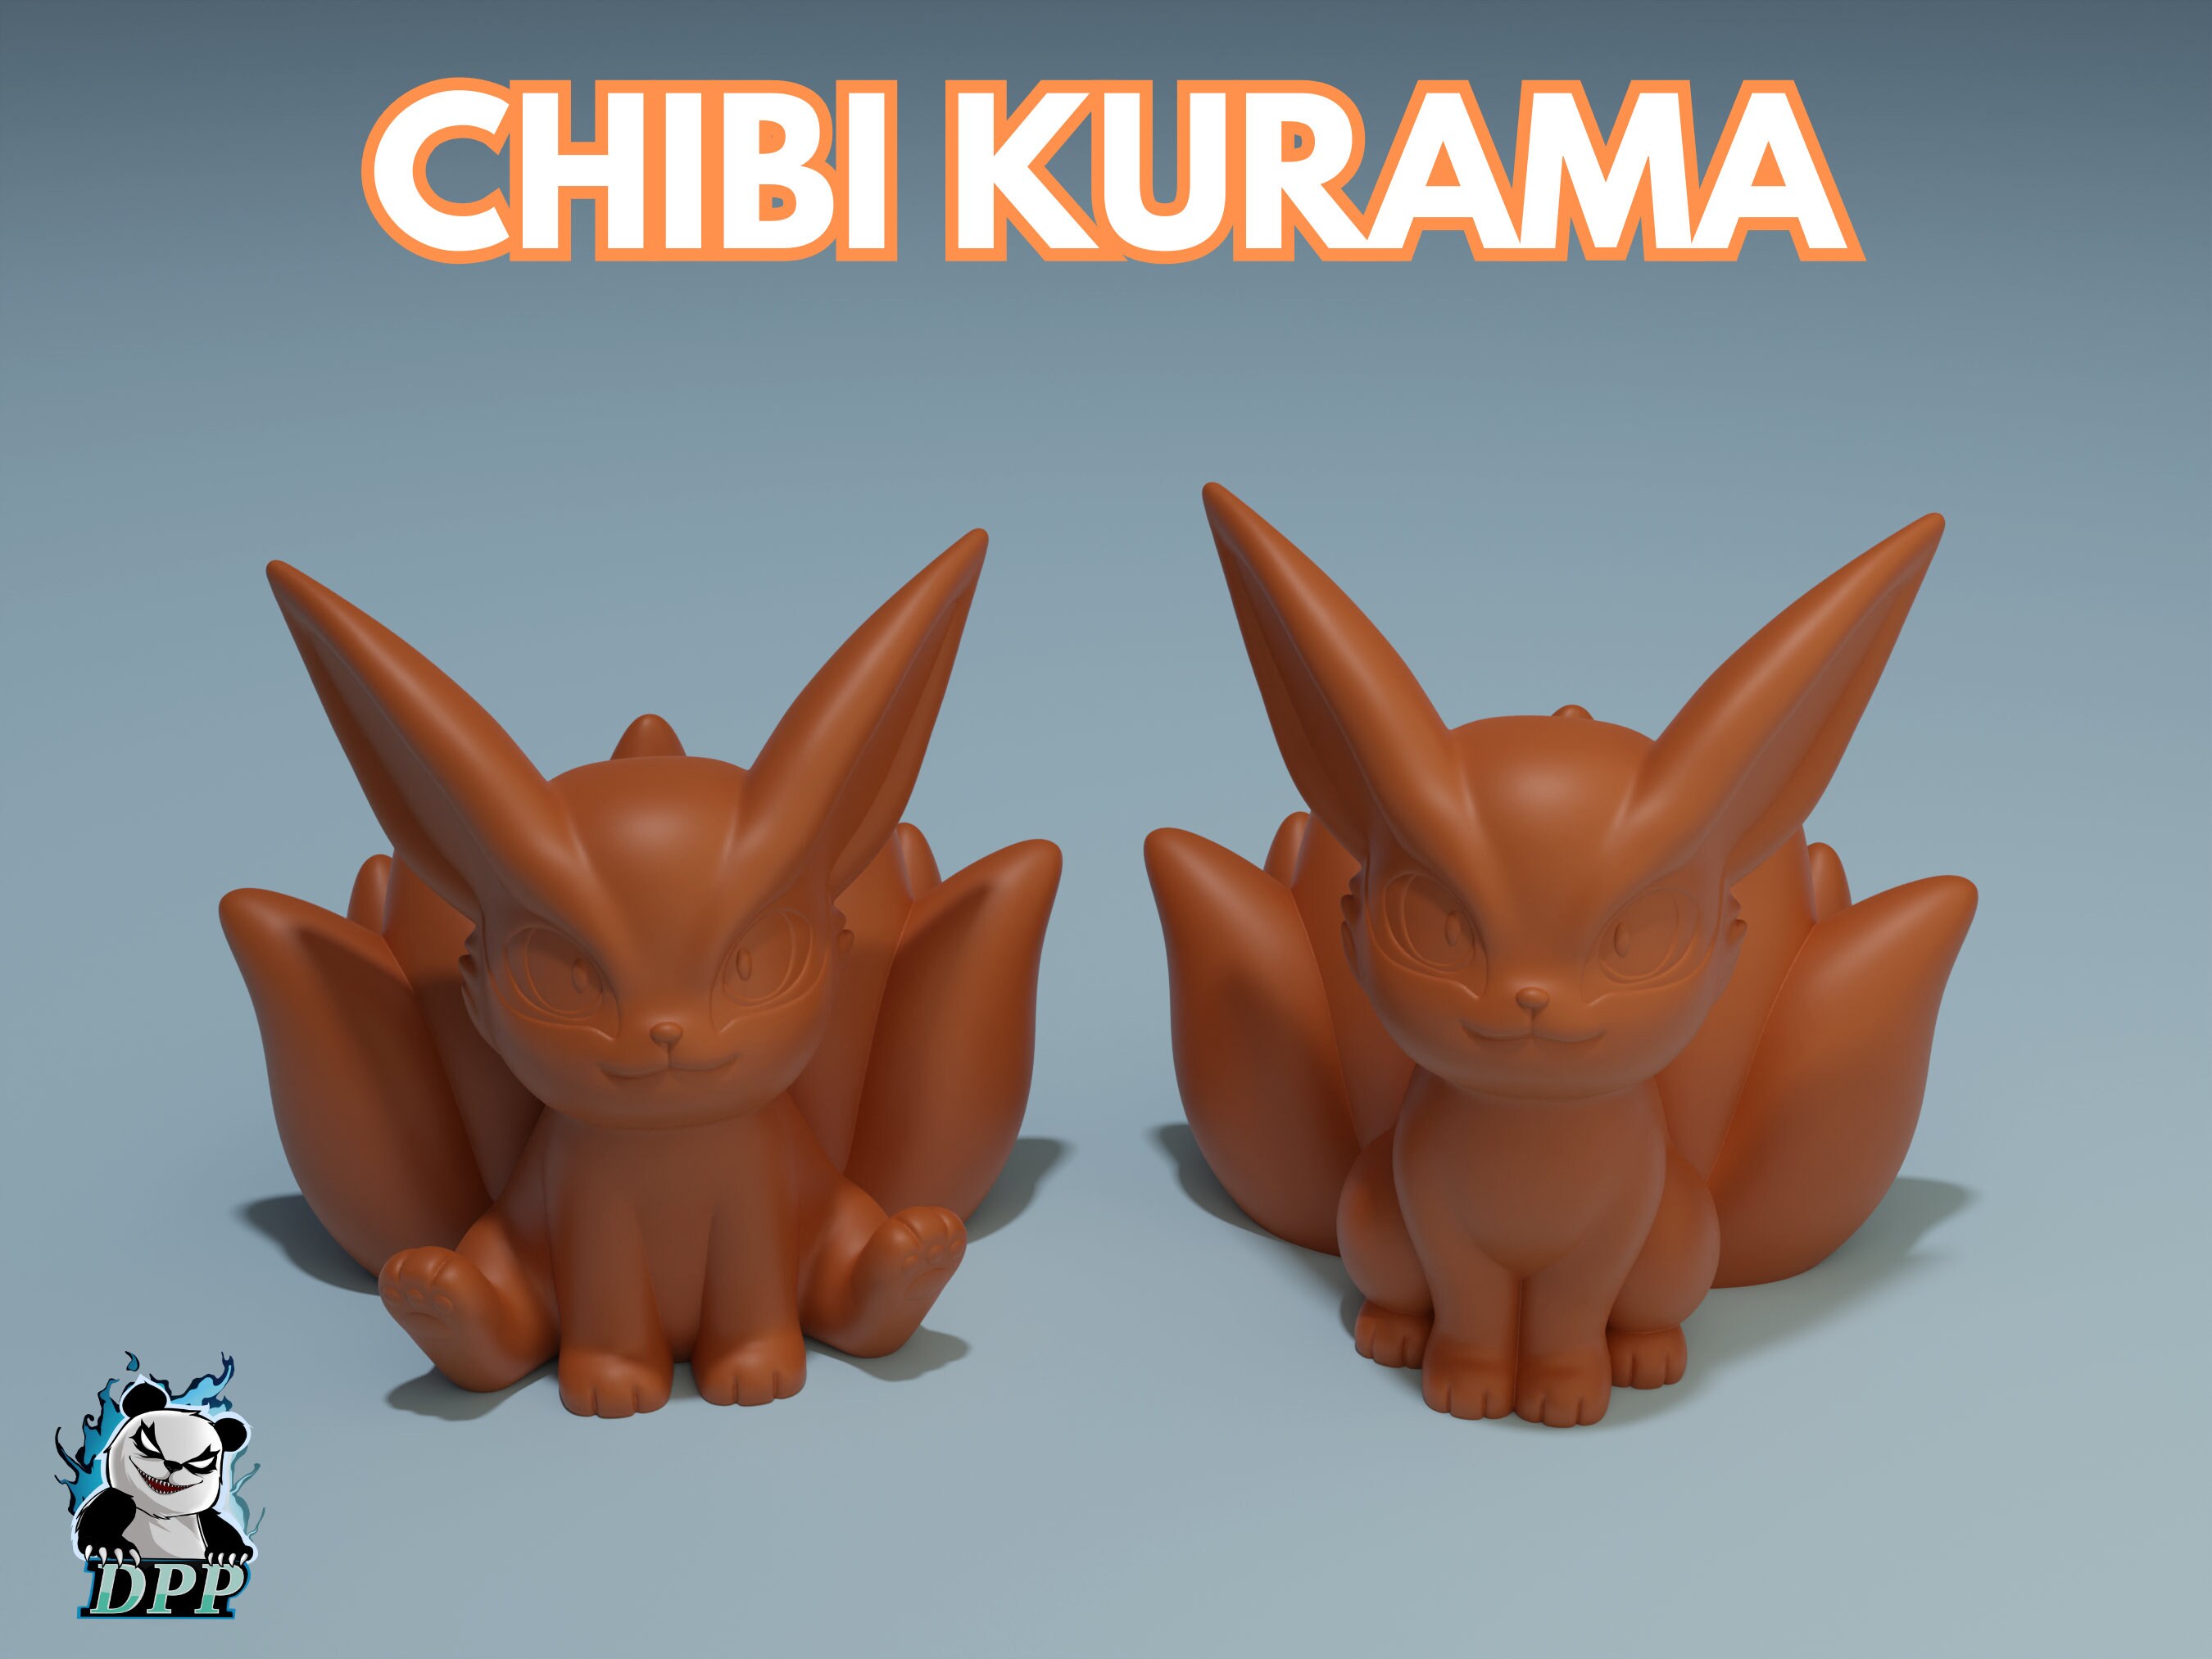 Chibi collection - Naruto by TakuSalvemini on DeviantArt